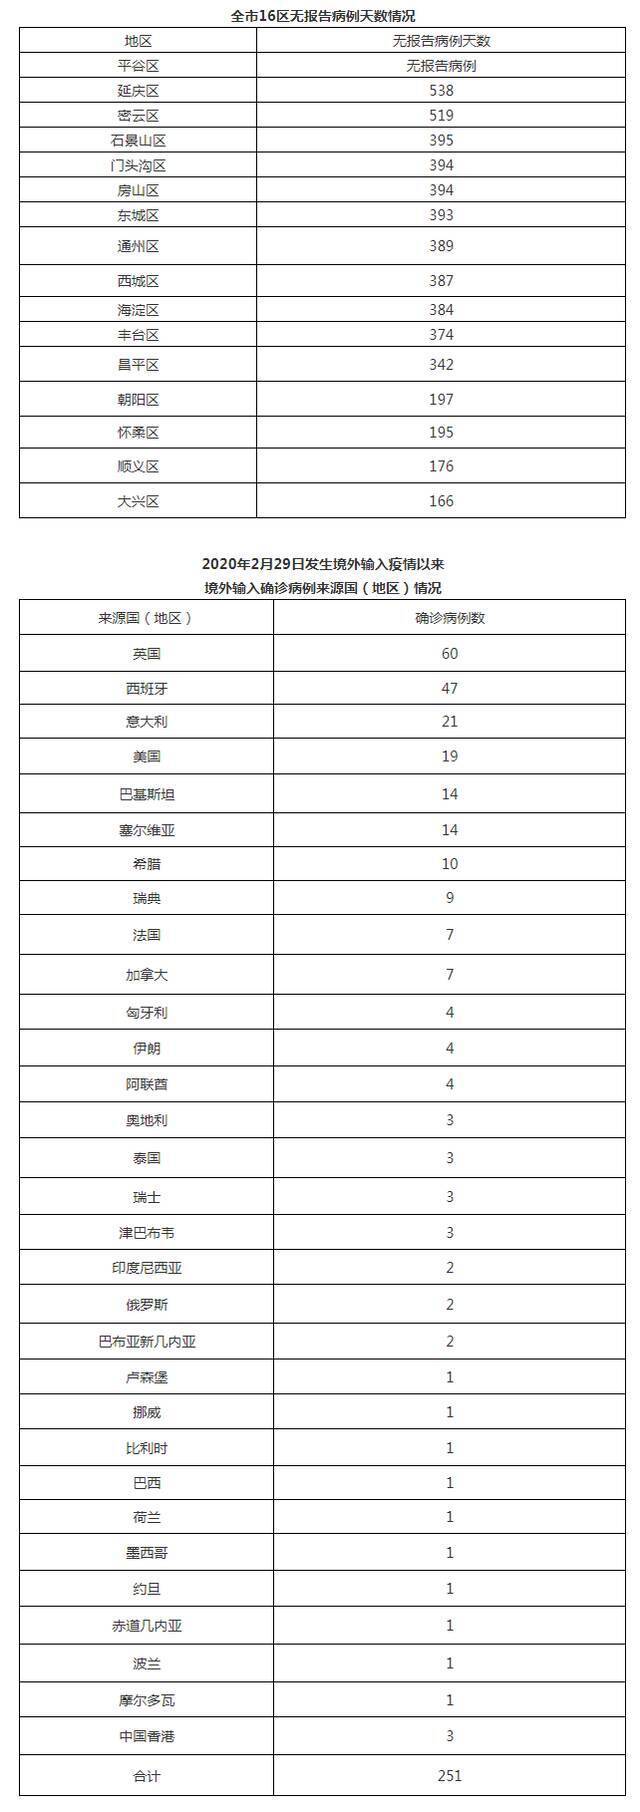 北京7月14日无新增新冠肺炎确诊病例